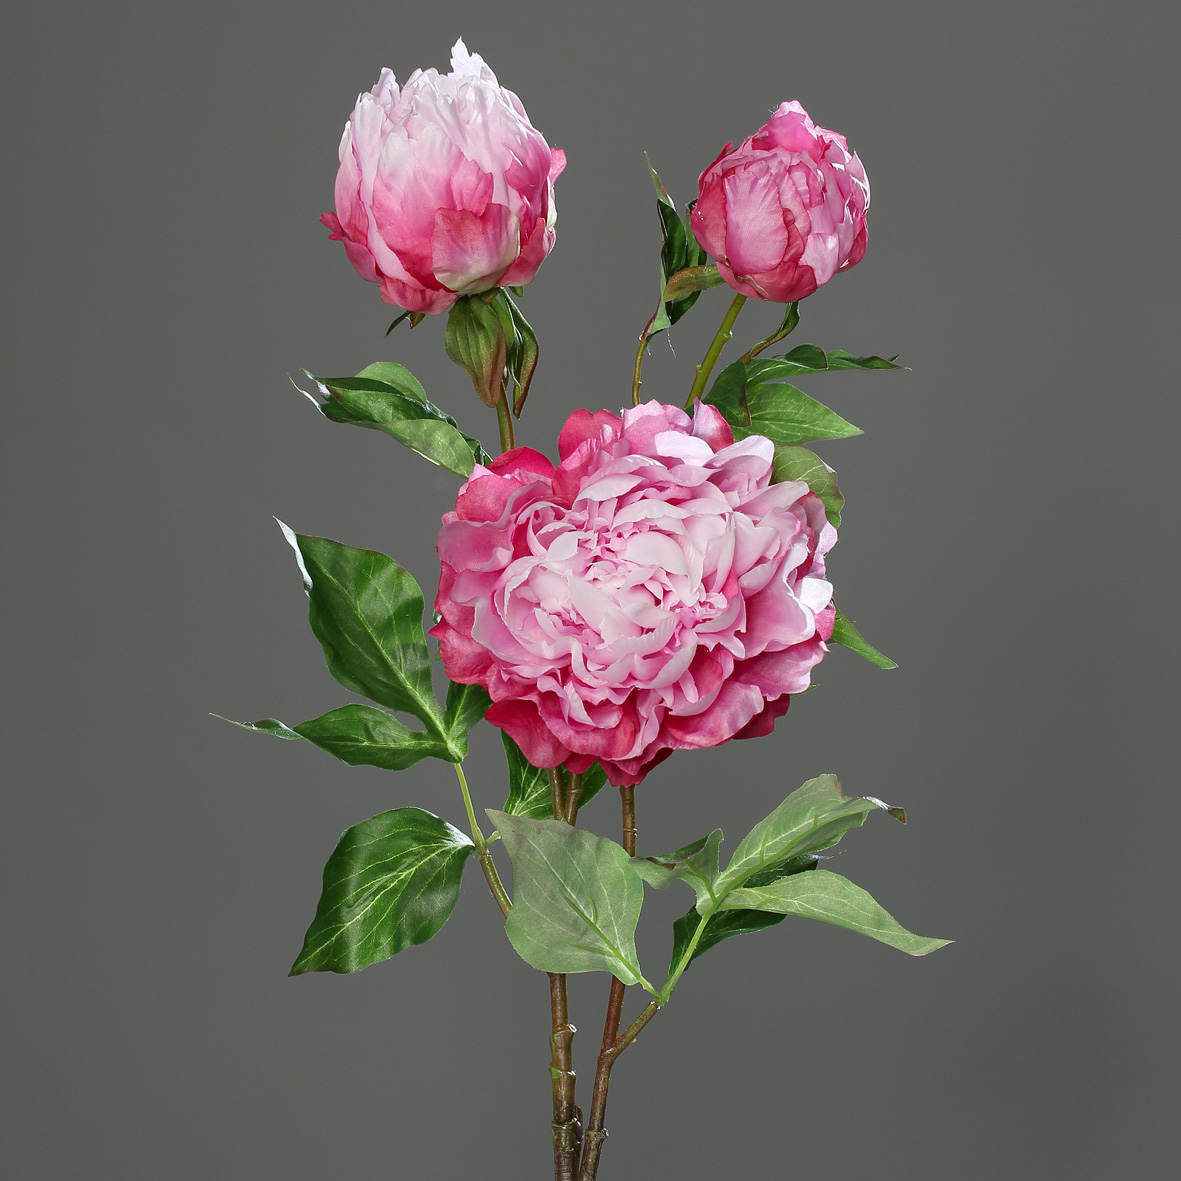 Große Pfingstrose mit 3 Blüten 82cm rosa-pink DP Kunstblumen Seidenblumen künstliche Blumen Päonie